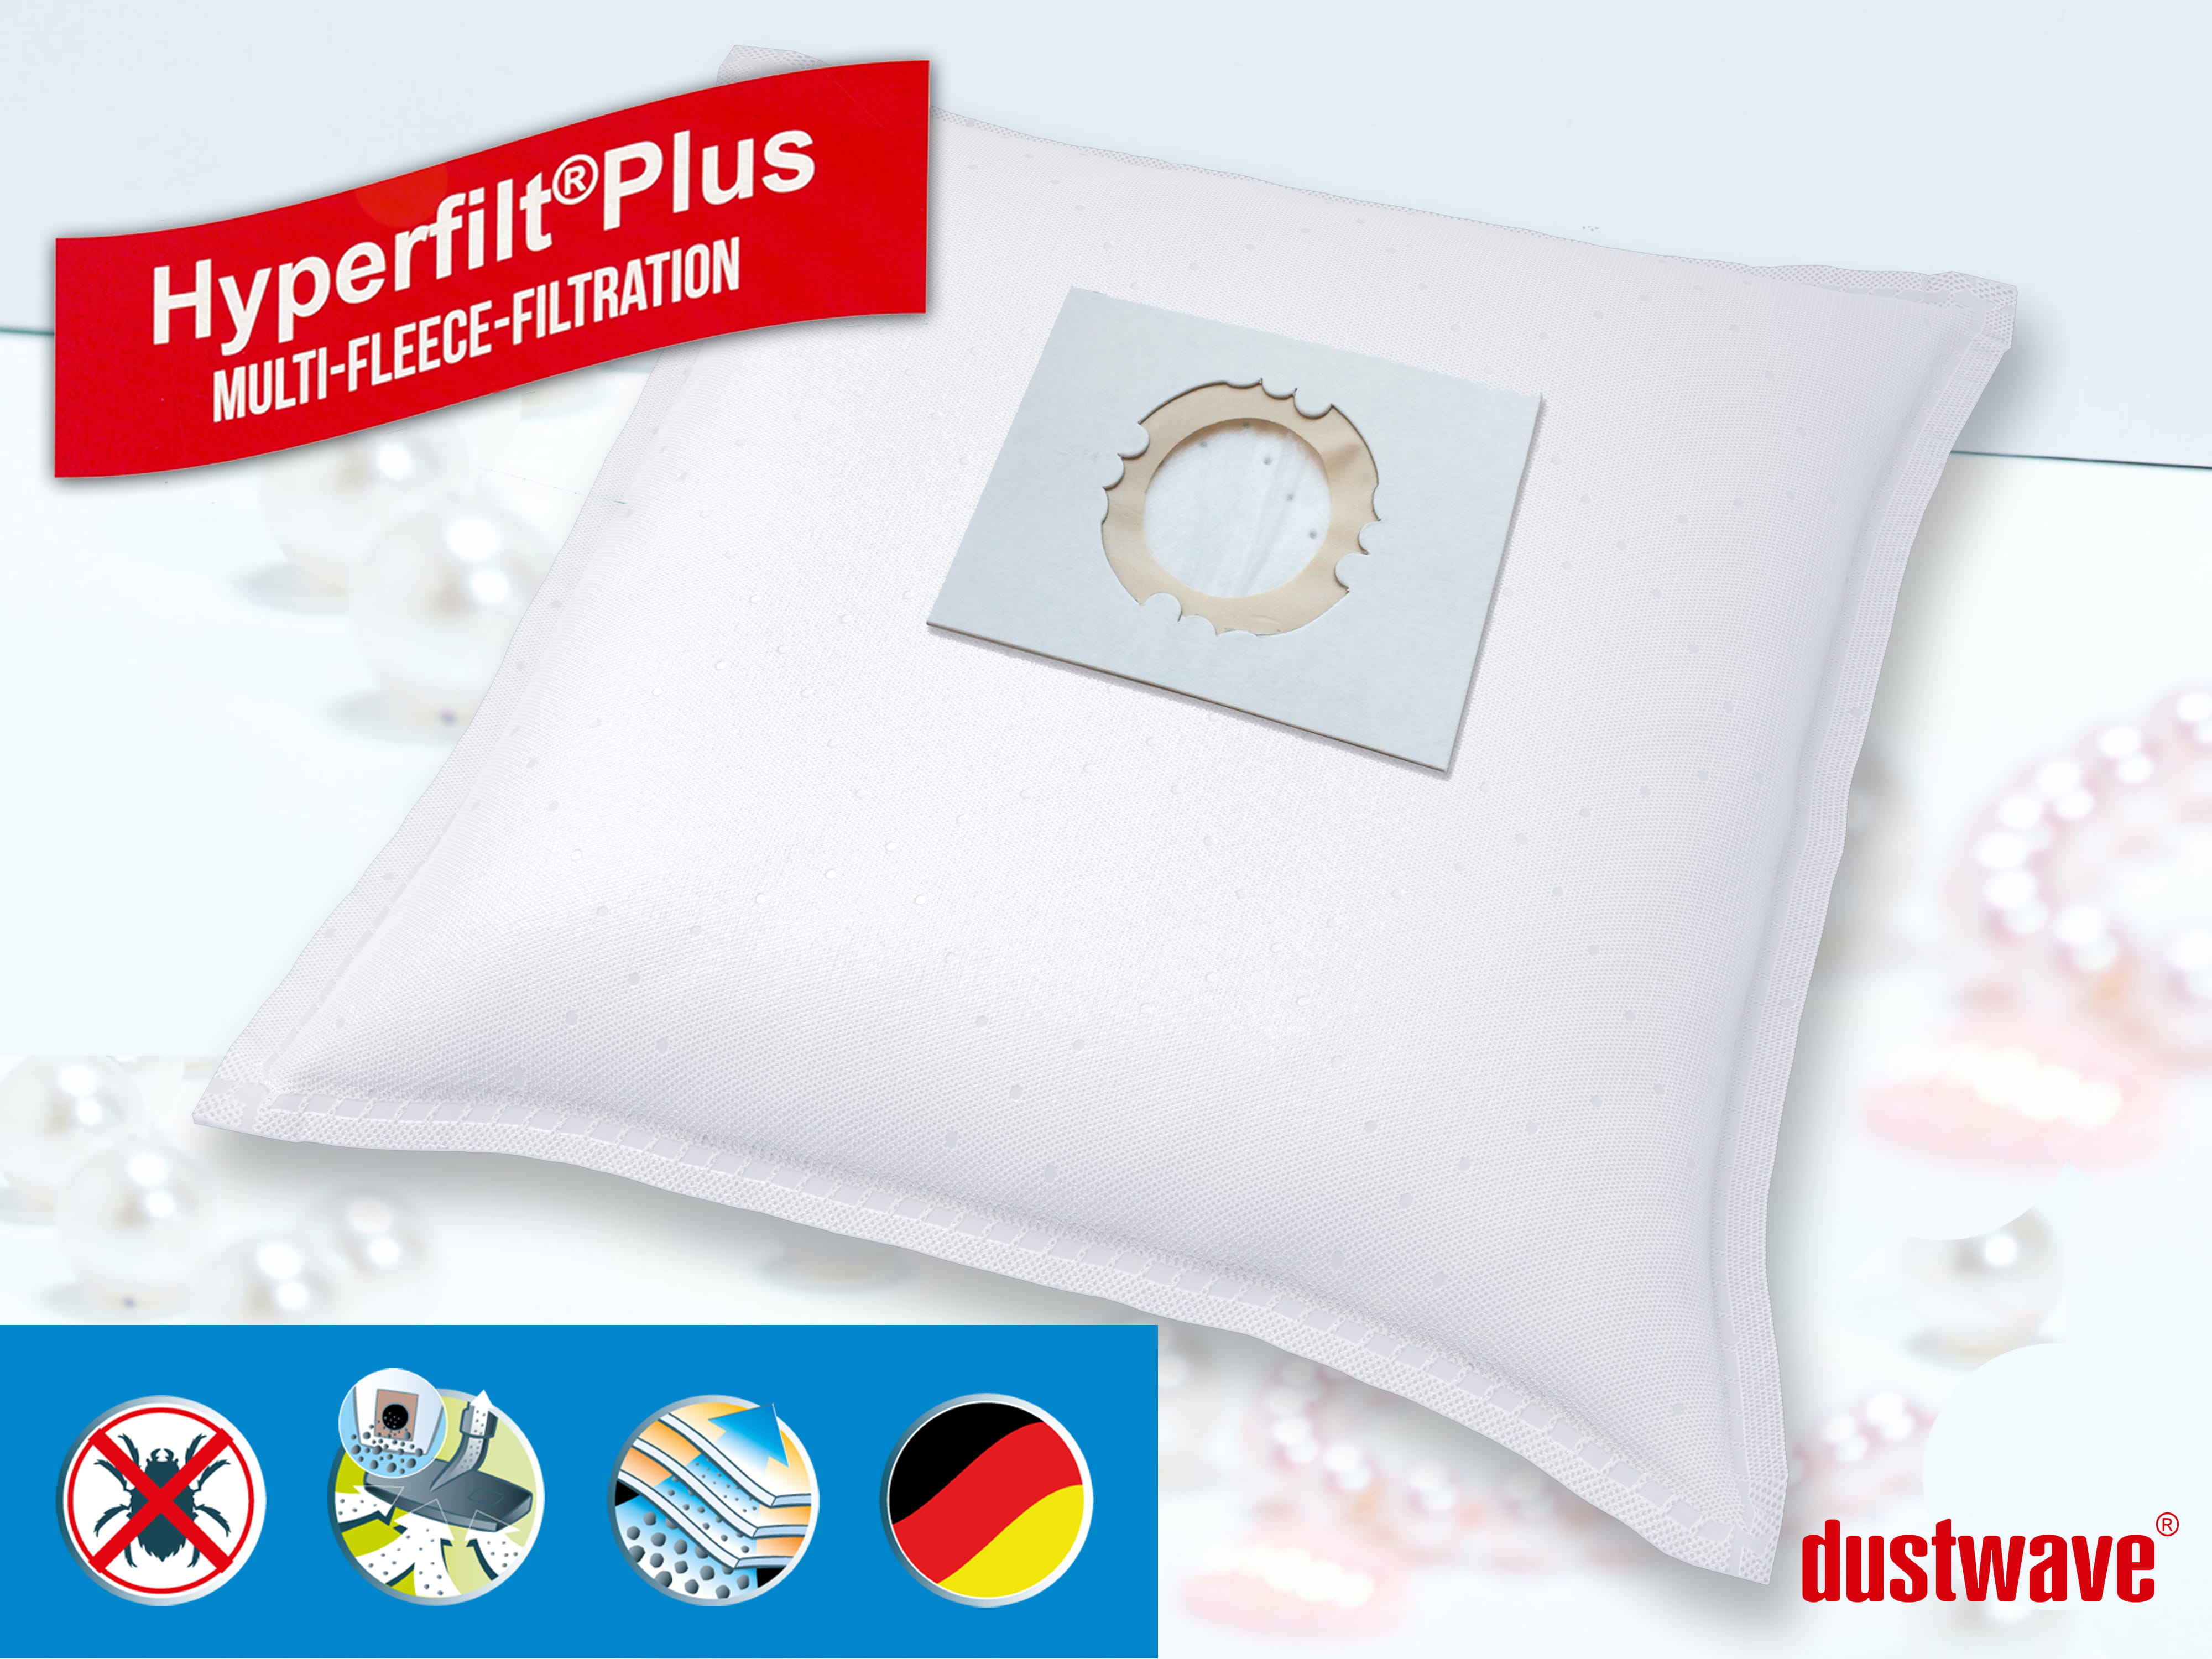 Dustwave® 10 Staubsaugerbeutel für Hoover BD S2053 001 - hocheffizient, mehrlagiges Mikrovlies mit Hygieneverschluss - Made in Germany